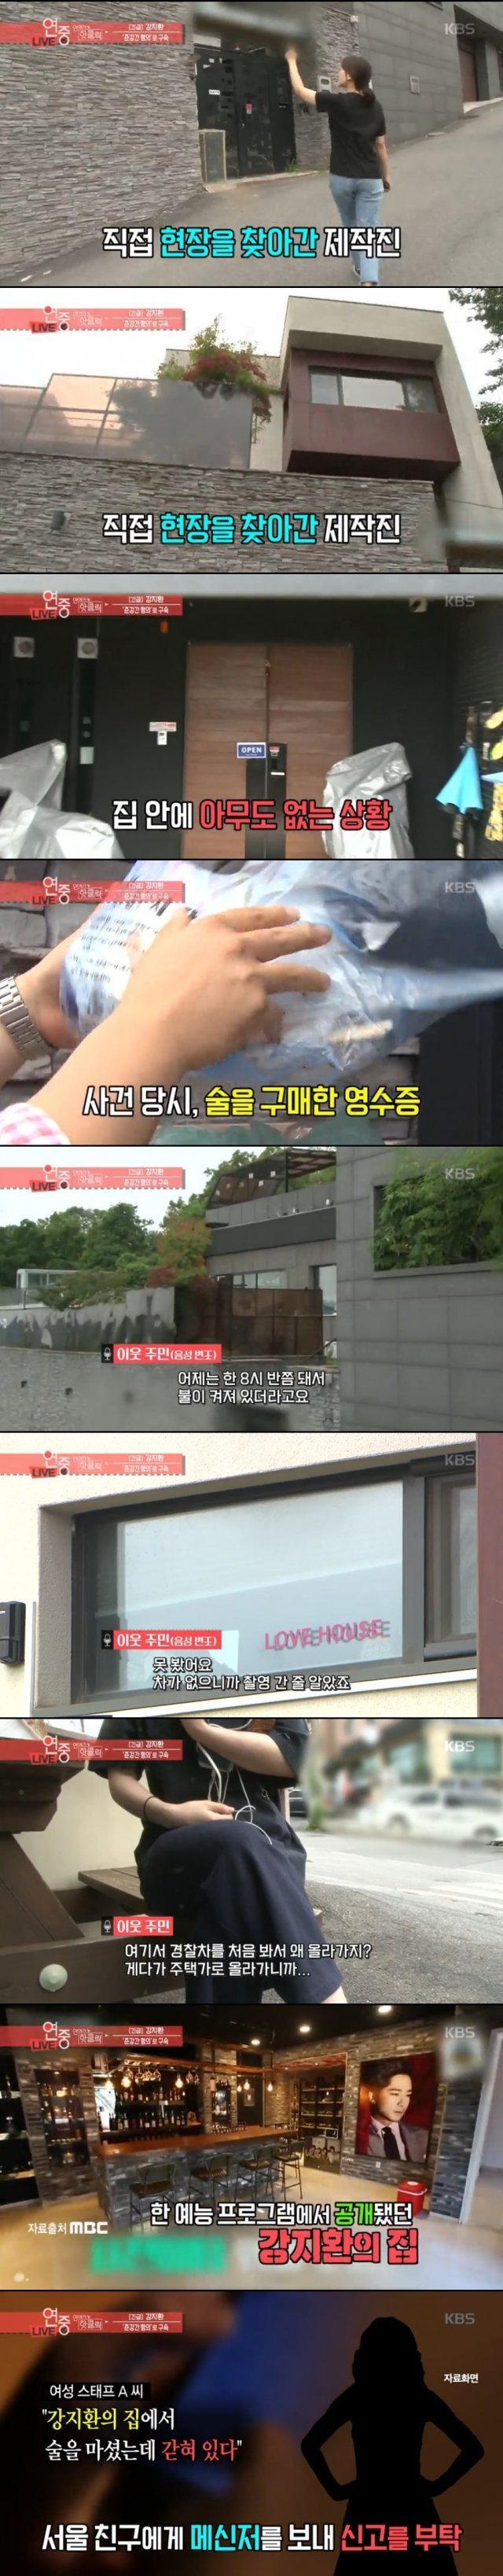 KBS 2TV 연예가중계 캡처